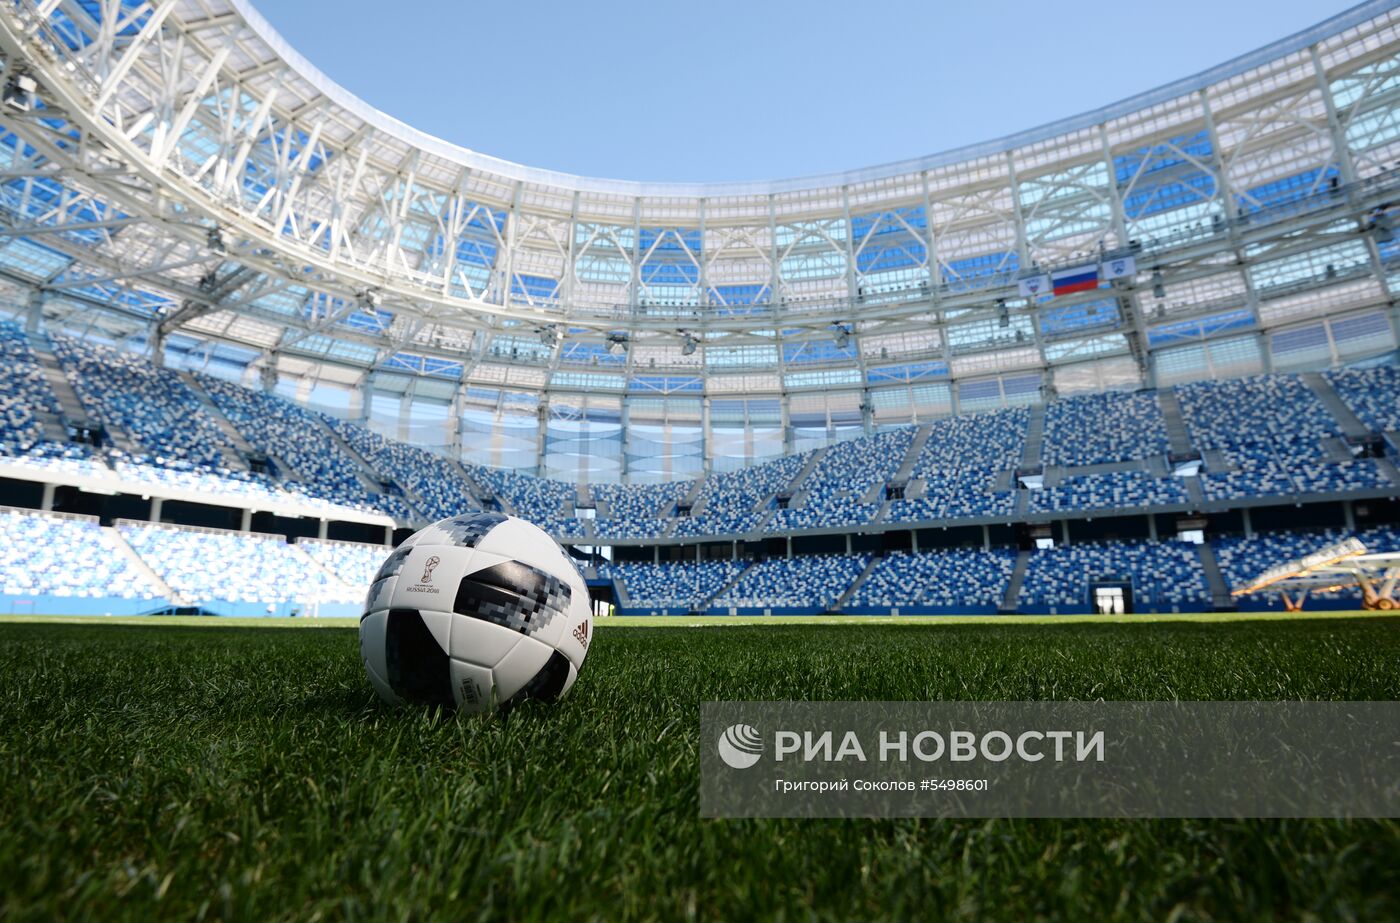 Стипе Плетикоса посетил "Стадион Нижний Новгород"